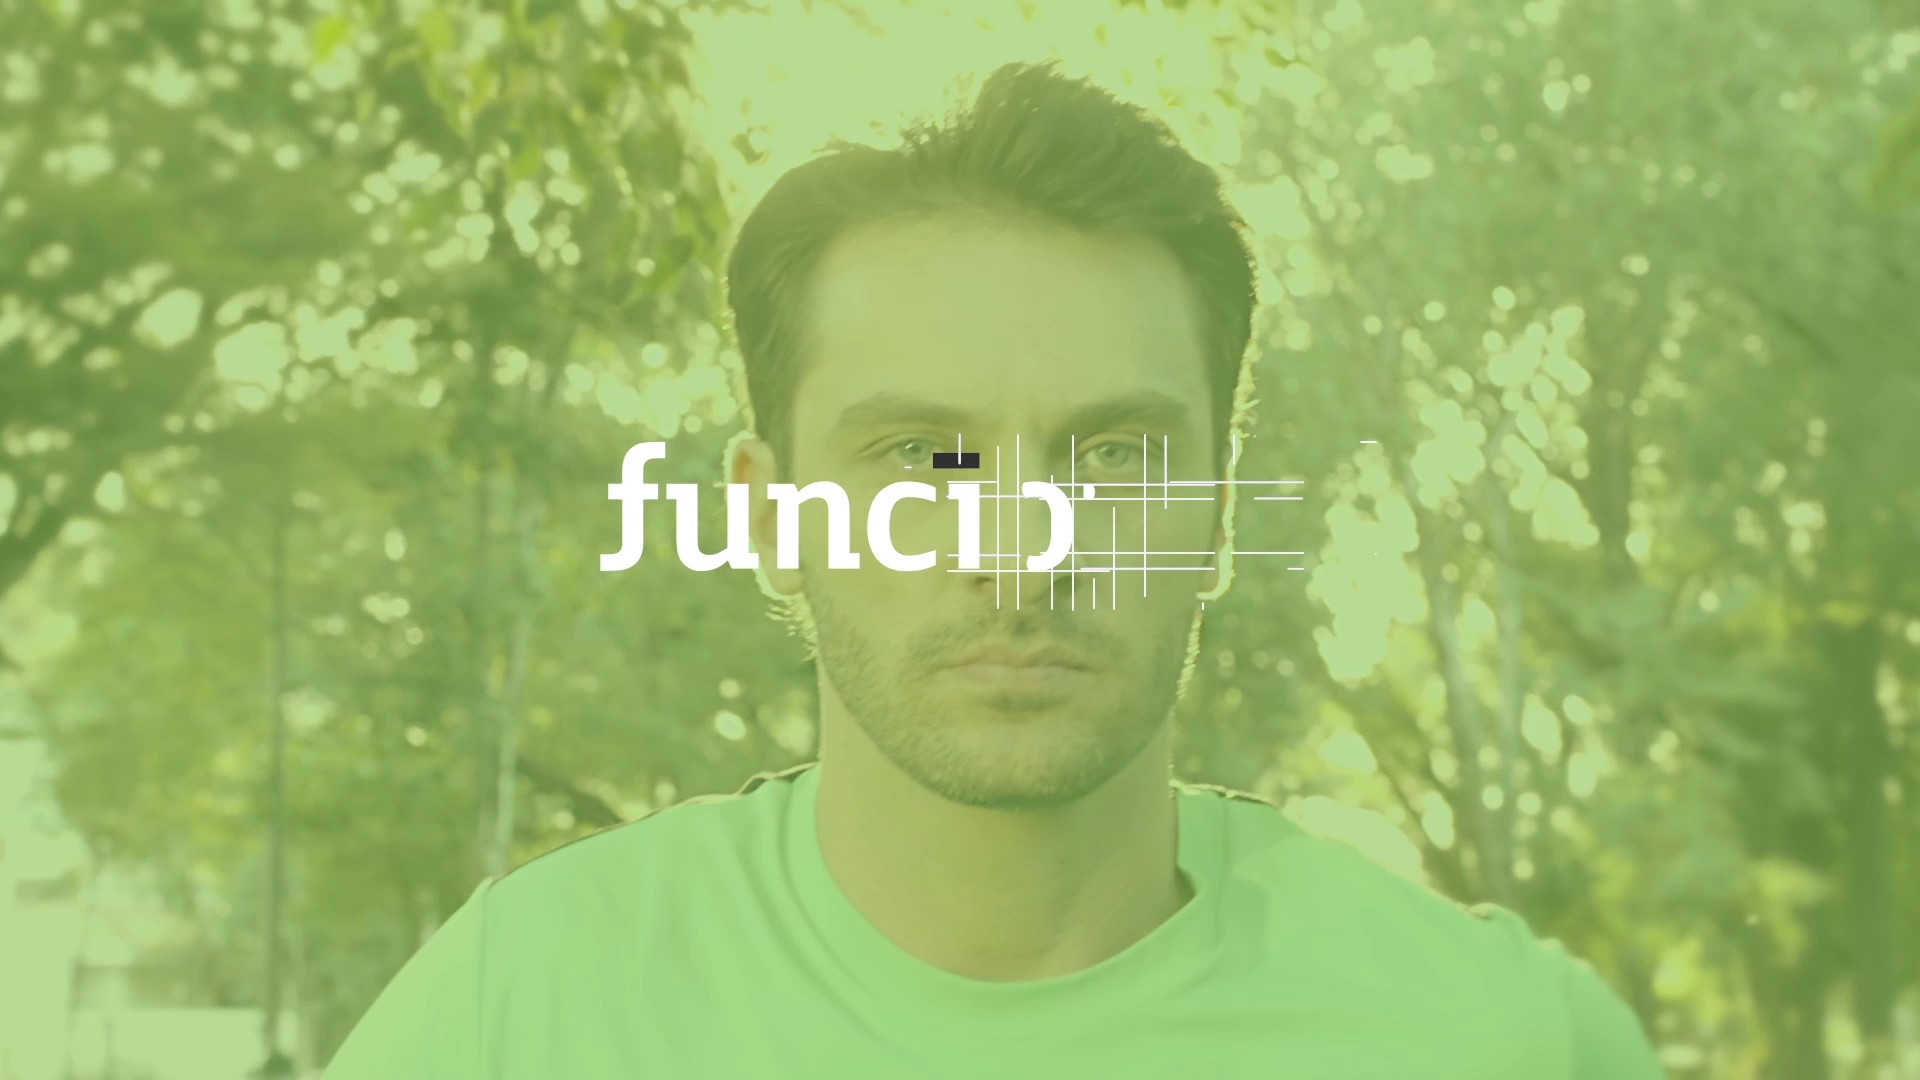 funcinal_09